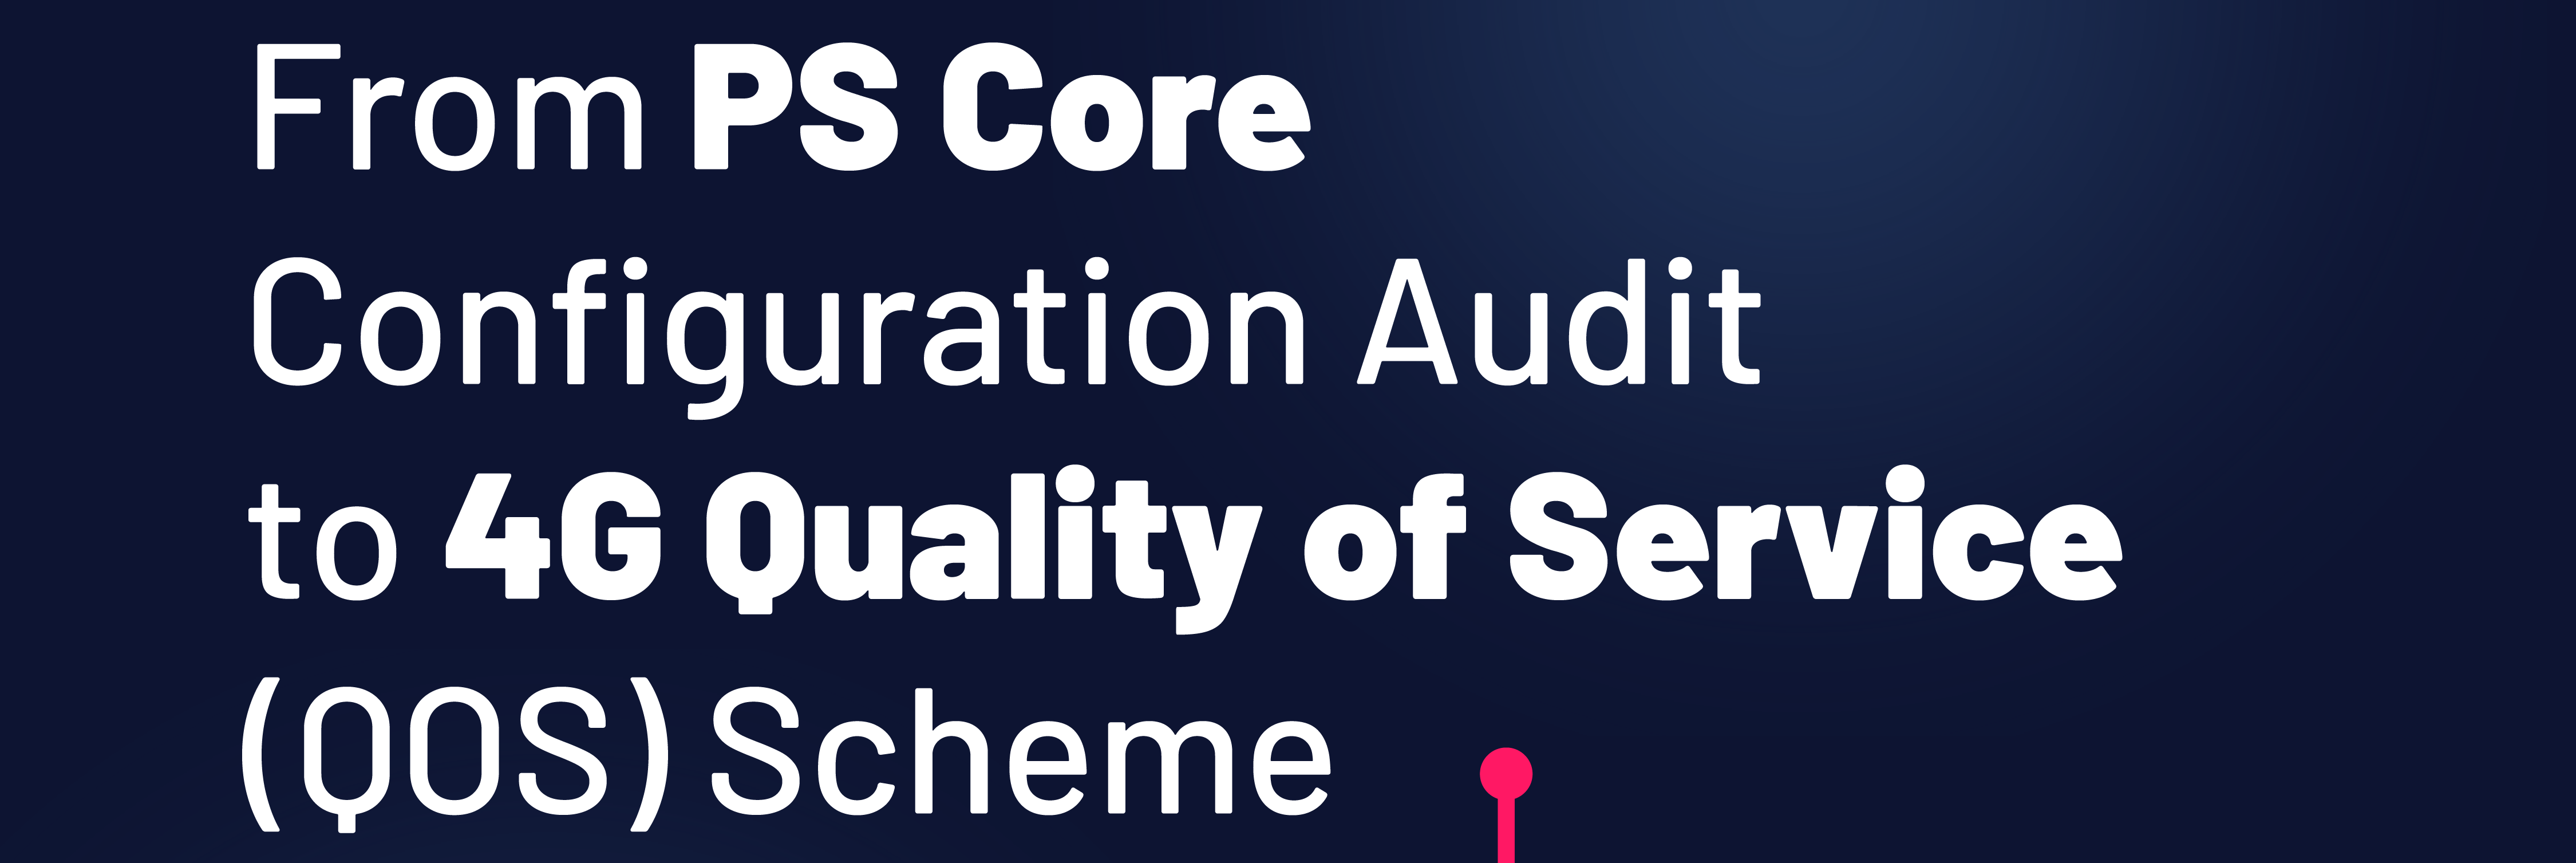 PS Core Configuration Audit Use Case: 4G Quality of Service (QoS) Scheme